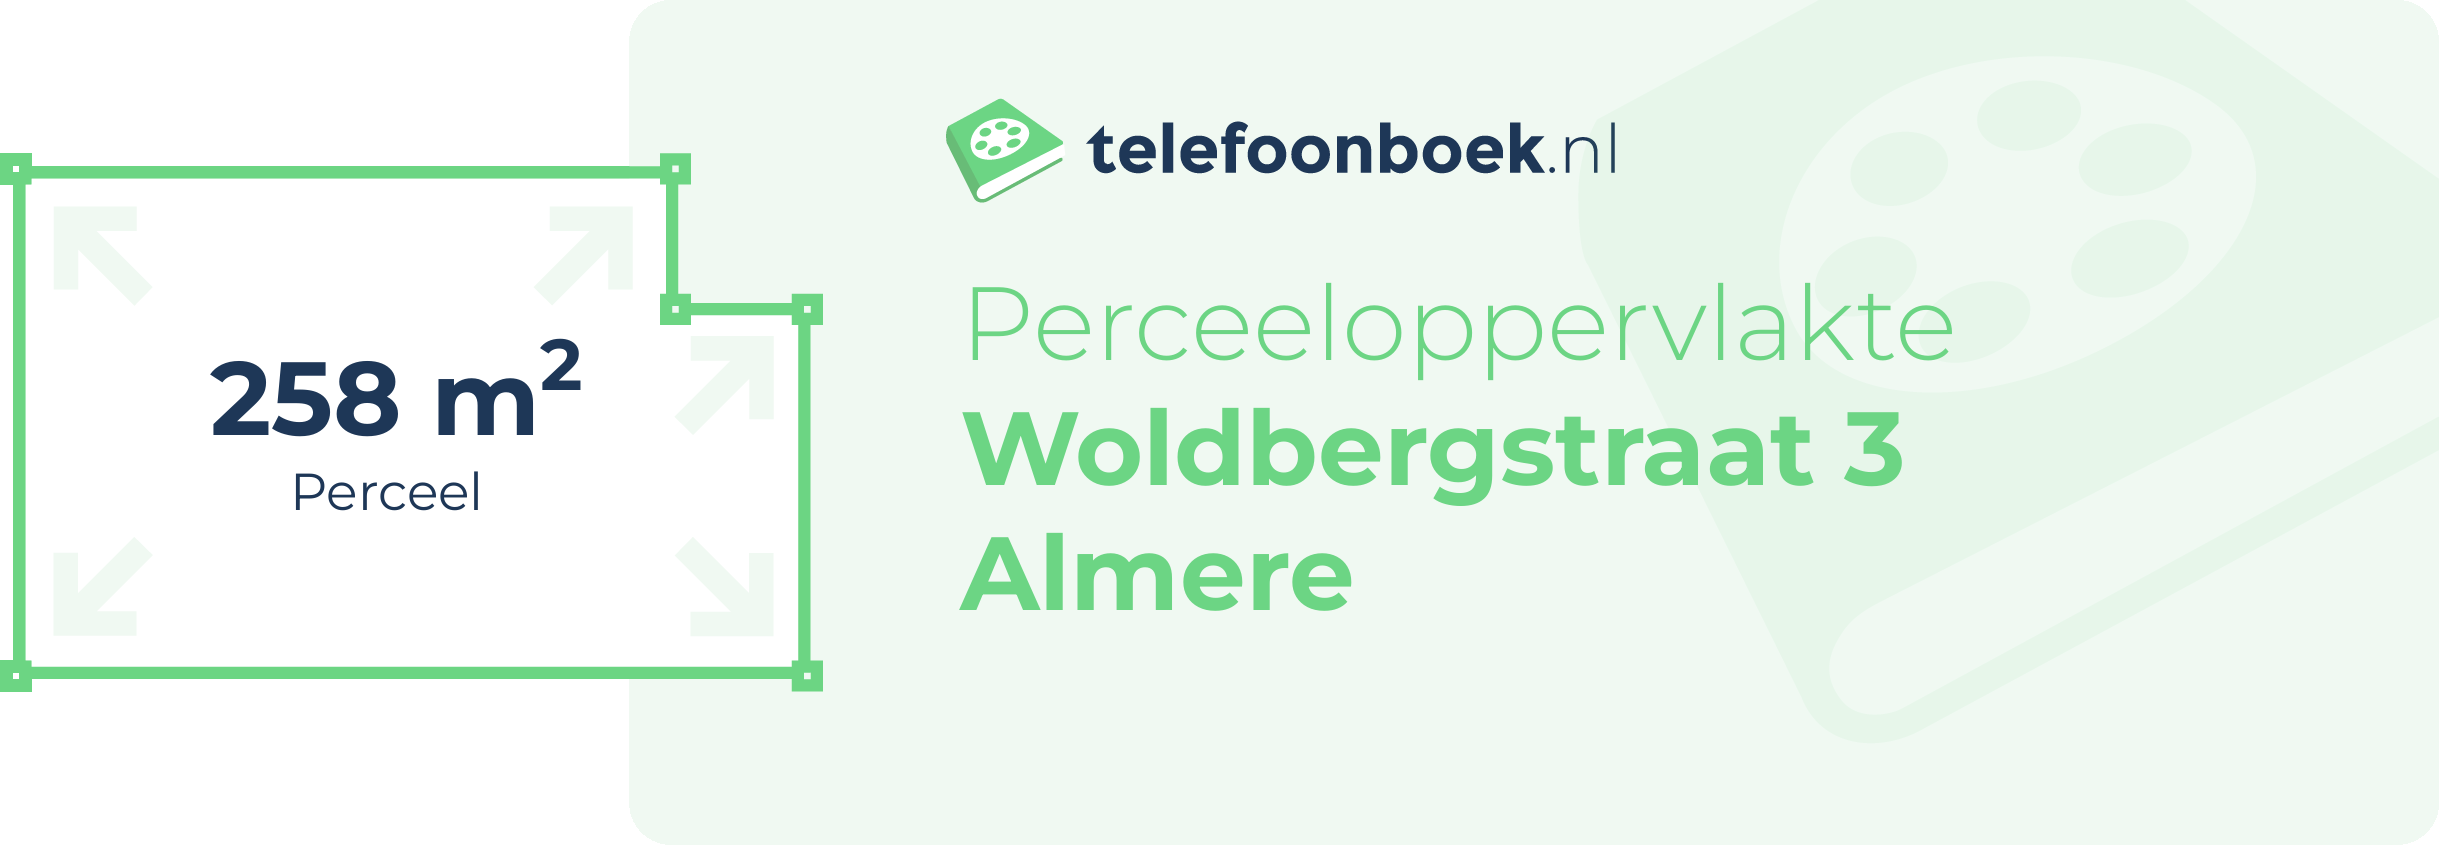 Perceeloppervlakte Woldbergstraat 3 Almere